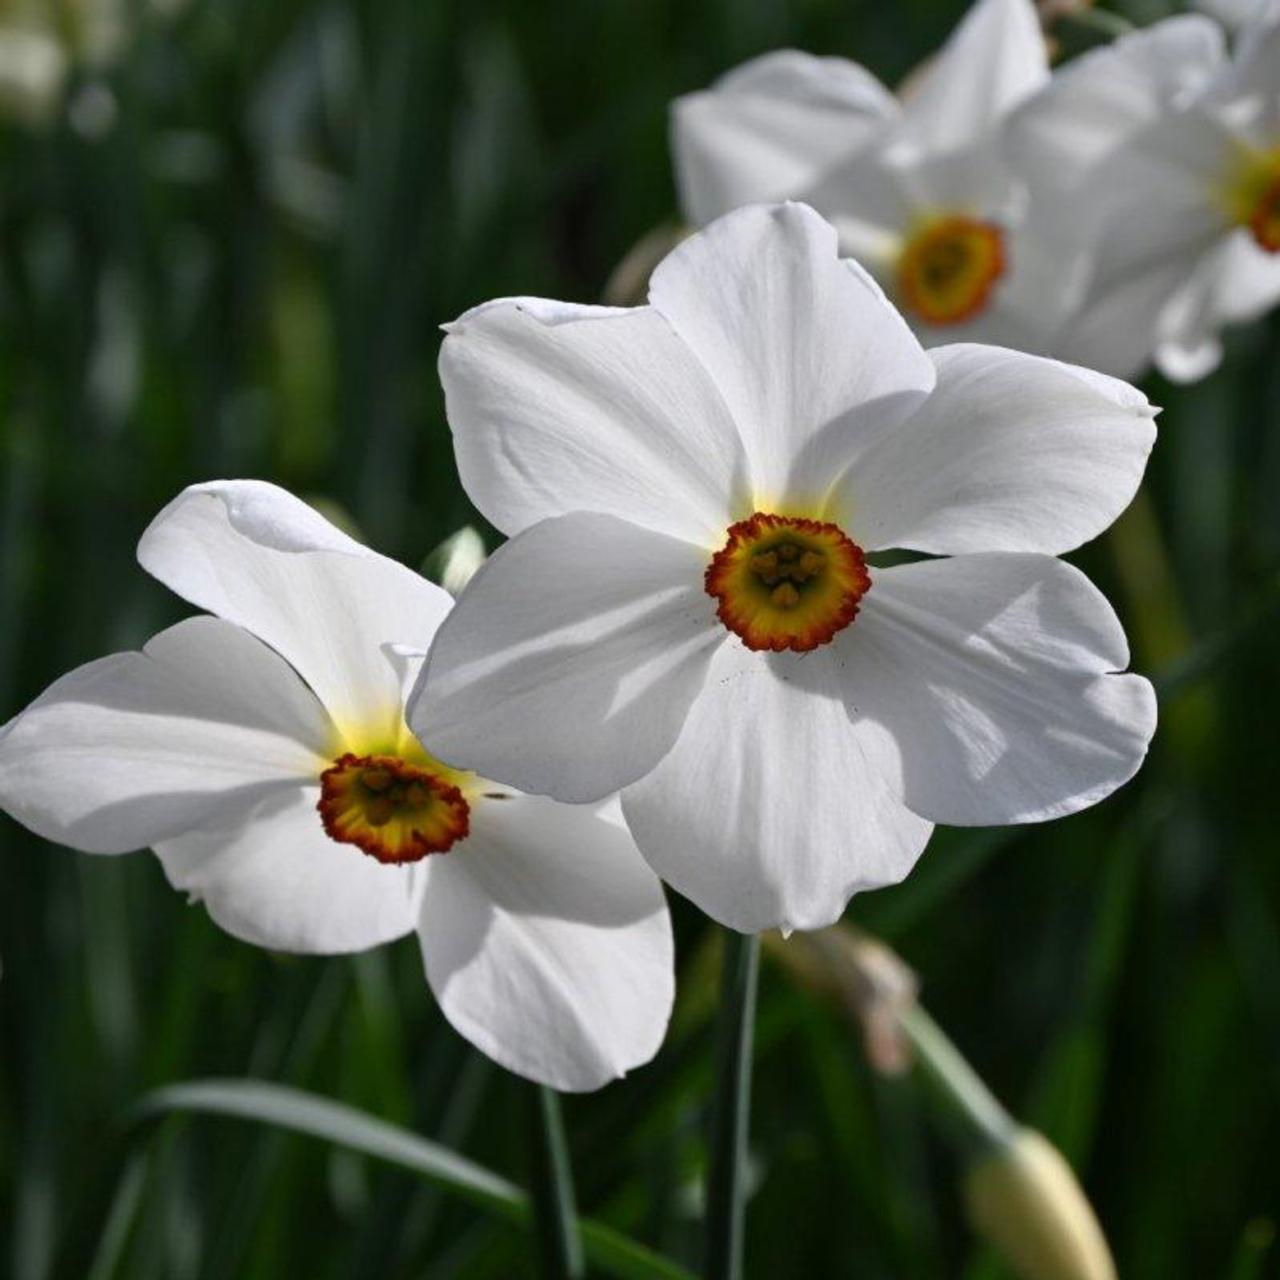 Narcissus 'Actaea' plant